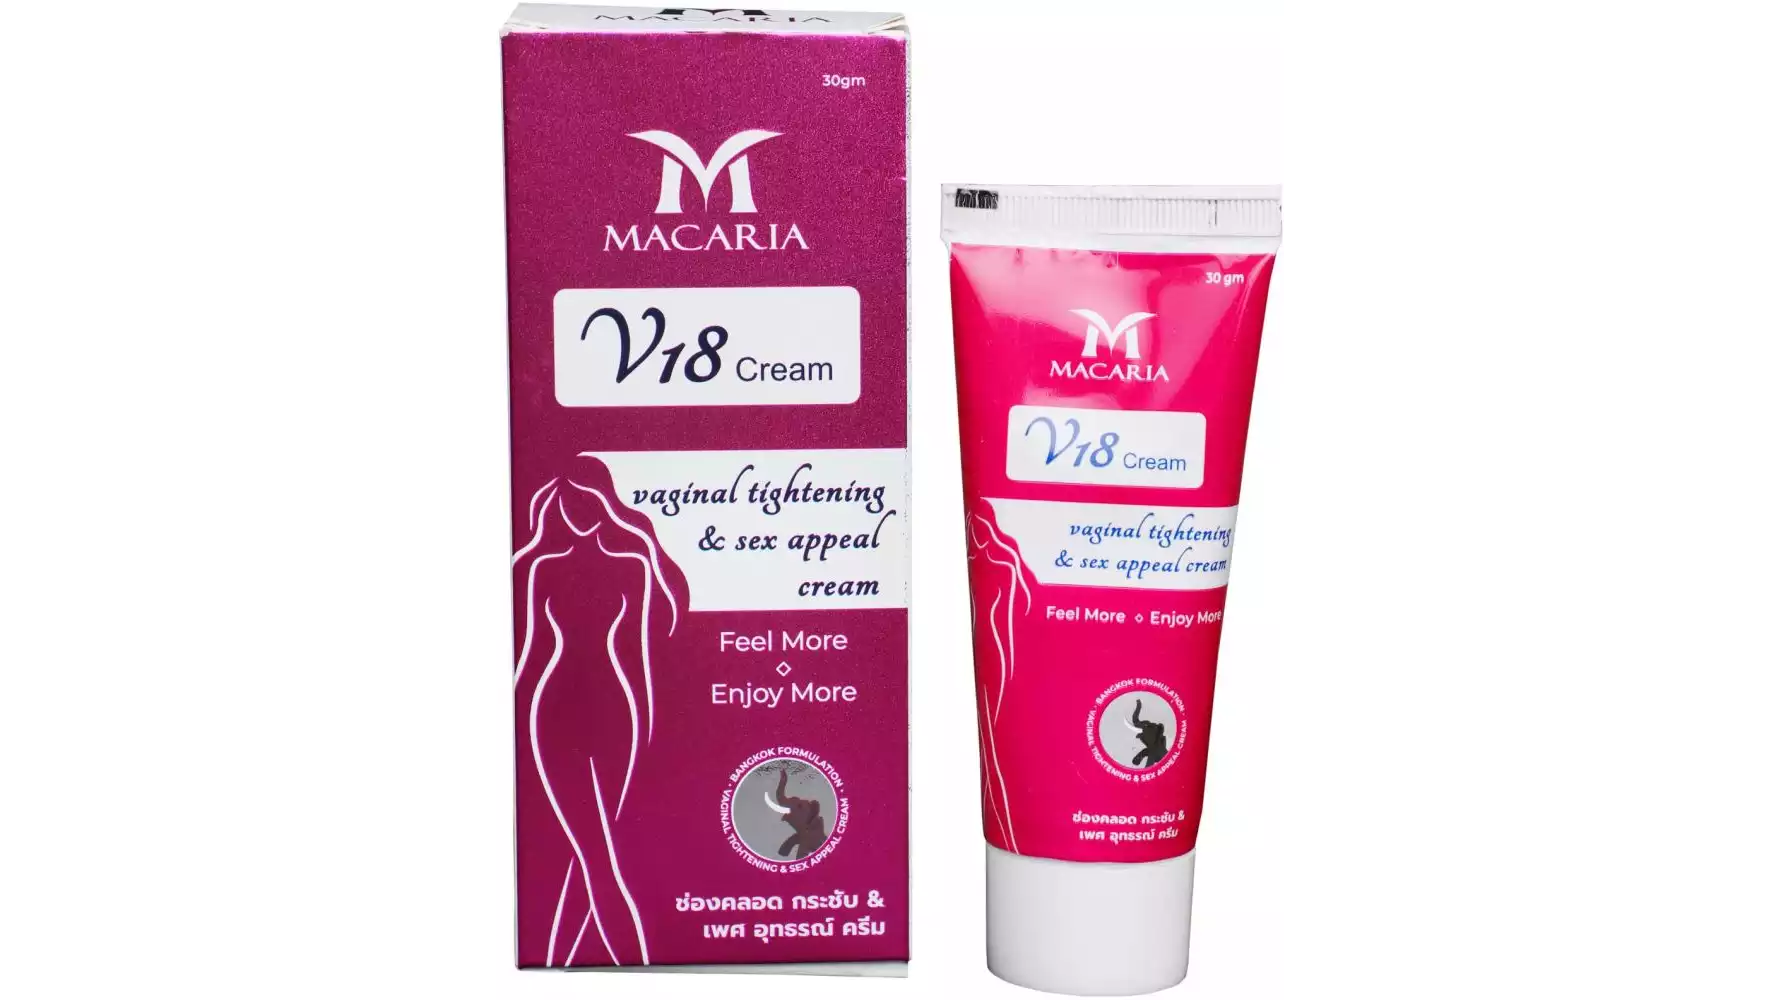 Macaria Virgin Again Cream (30ml)